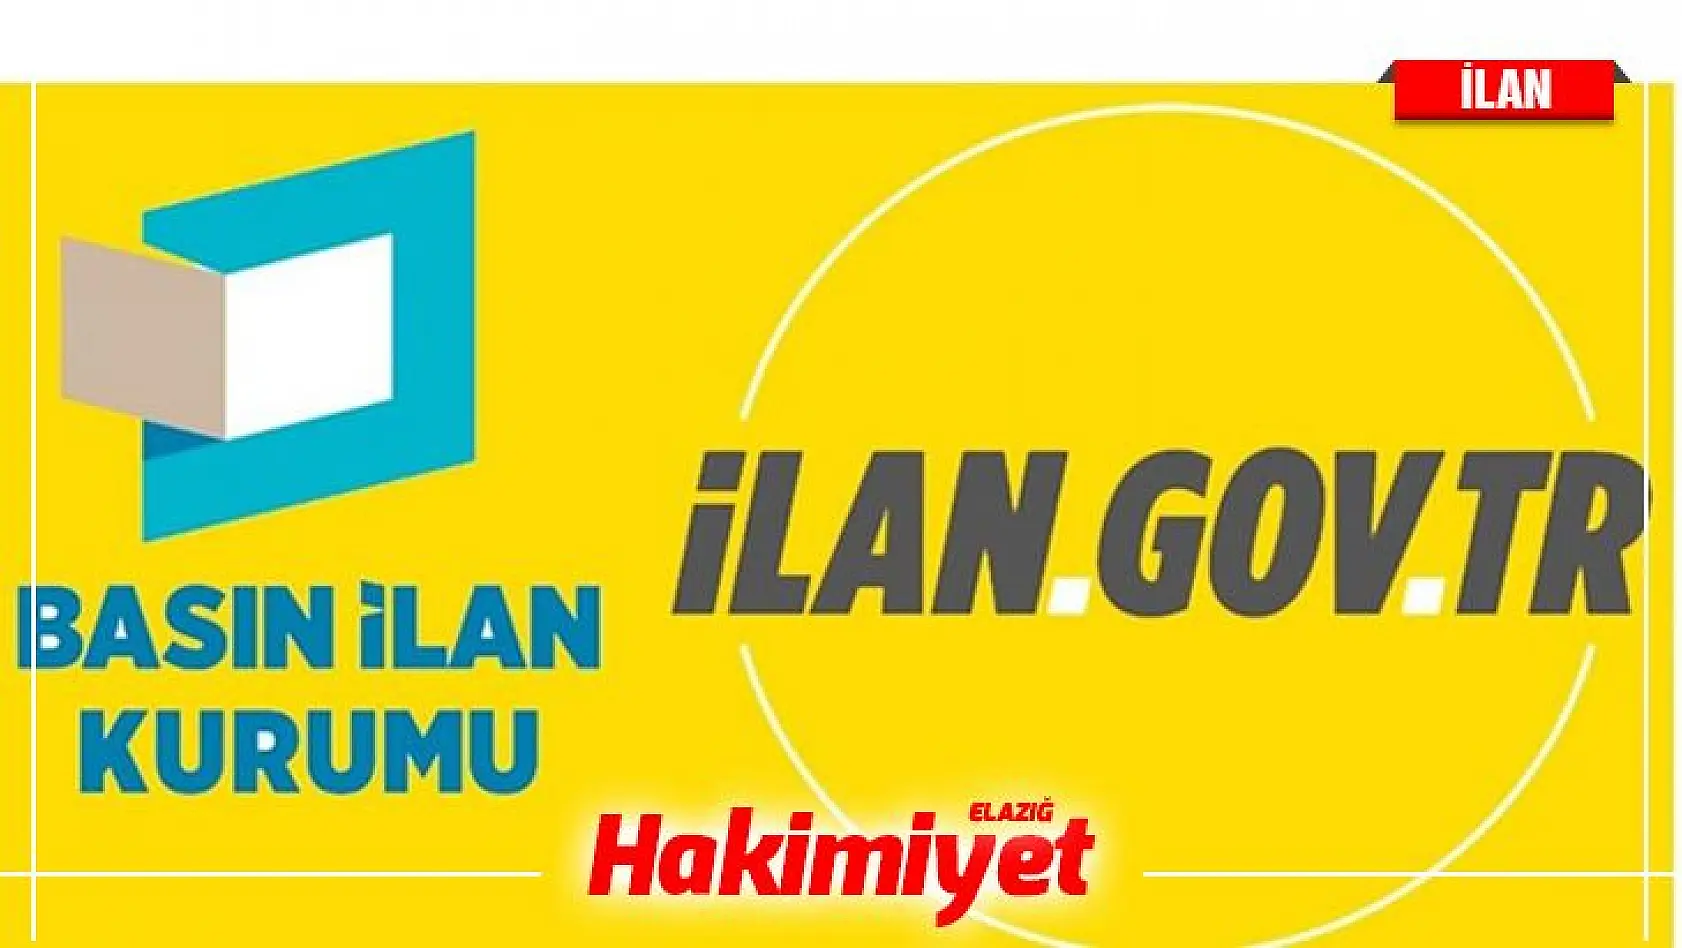 İstanbul Okan Üniversitesi 39 Öğretim Üyesi alıyor